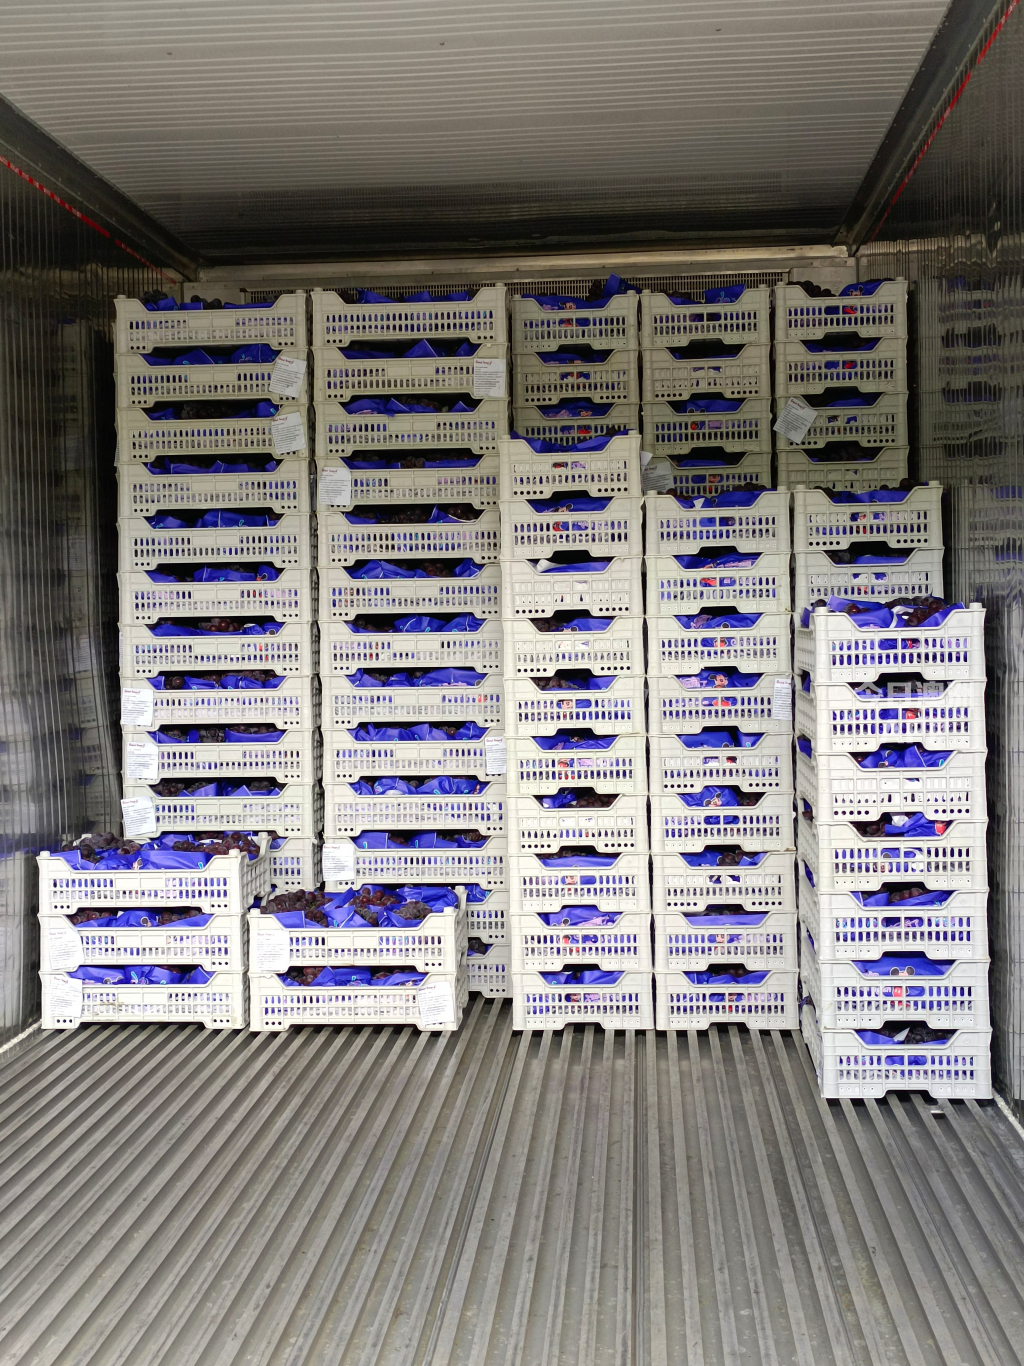 澳洲九州国际物流  中澳专线   冷冻食品 敏感货 包柜tebao海运出口  澳洲强势清关 派送